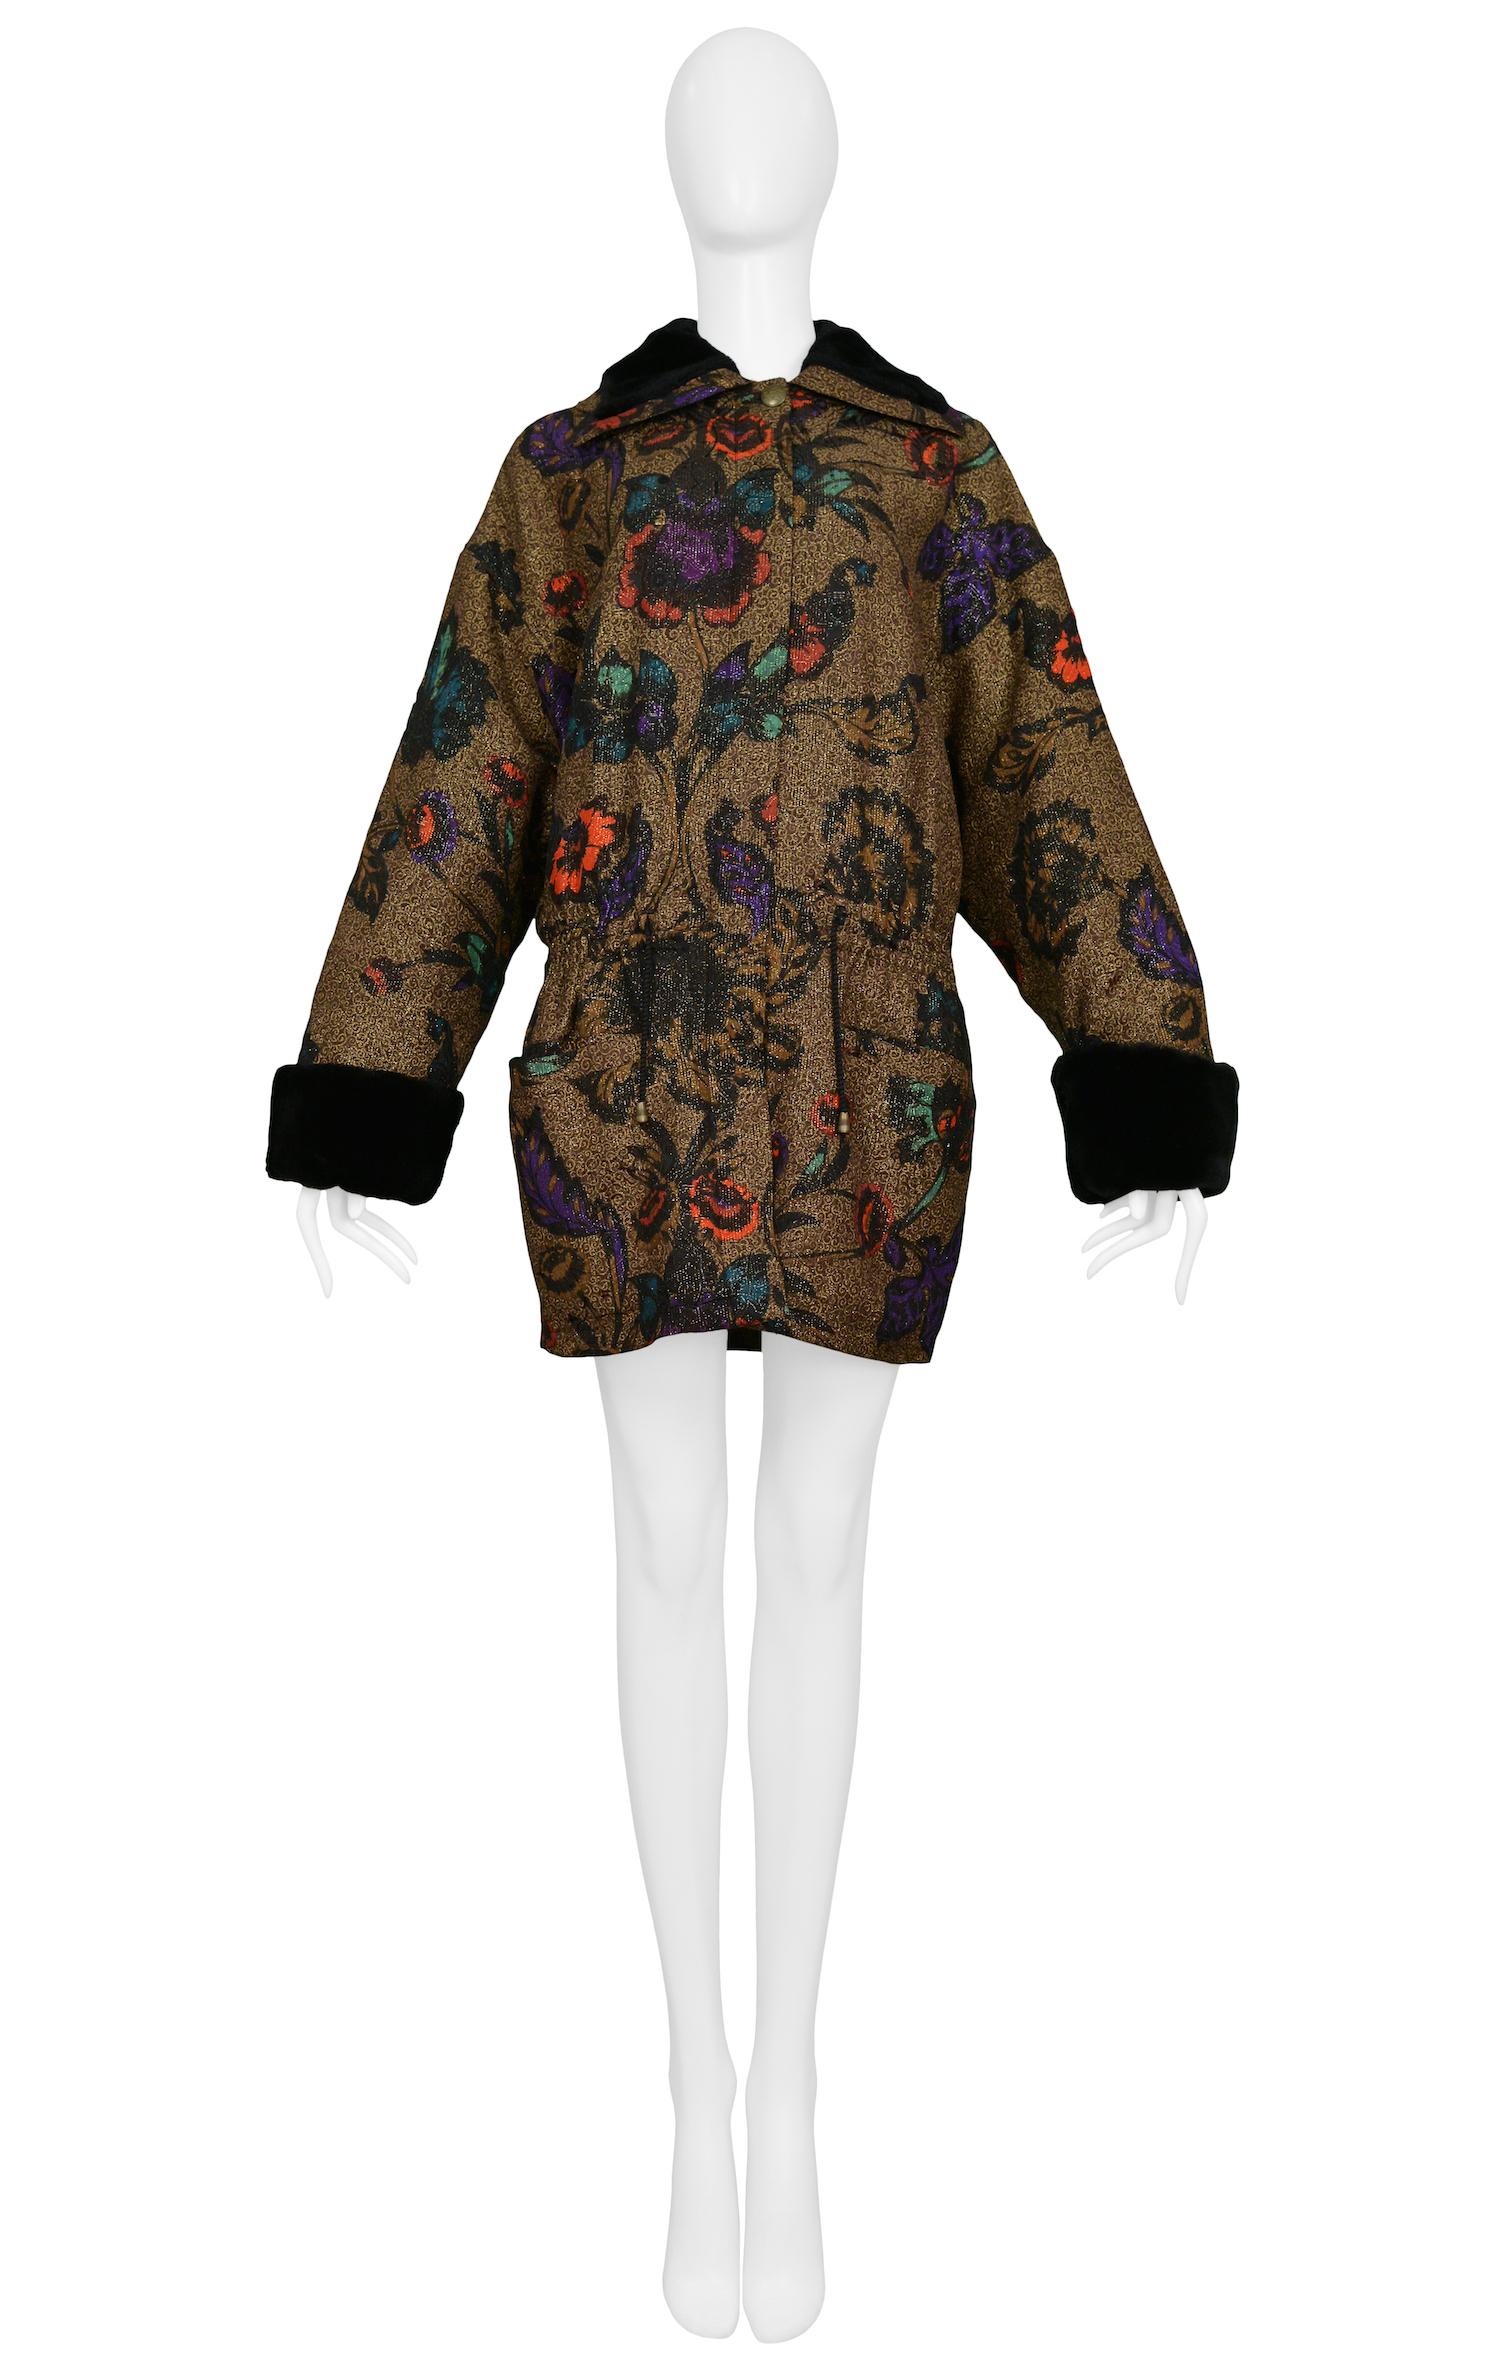 Manteau vintage Gianni Versace en métal doré avec un imprimé floral d'automne et des poignets et un col en fausse fourrure noire.

Excellent état vintage

Taille 40